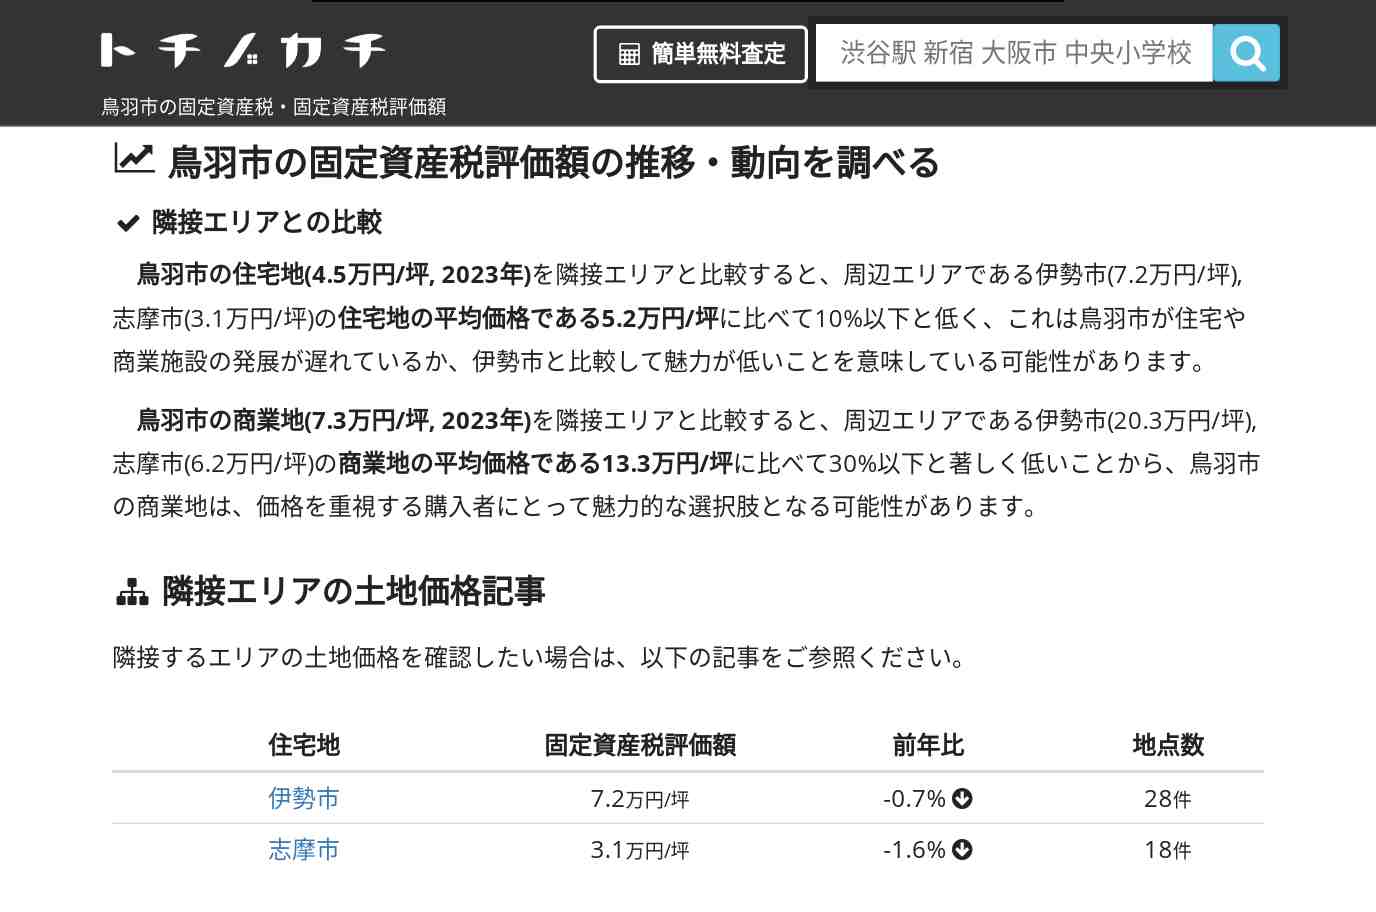 加茂中学校(三重県 鳥羽市)周辺の固定資産税・固定資産税評価額 | トチノカチ